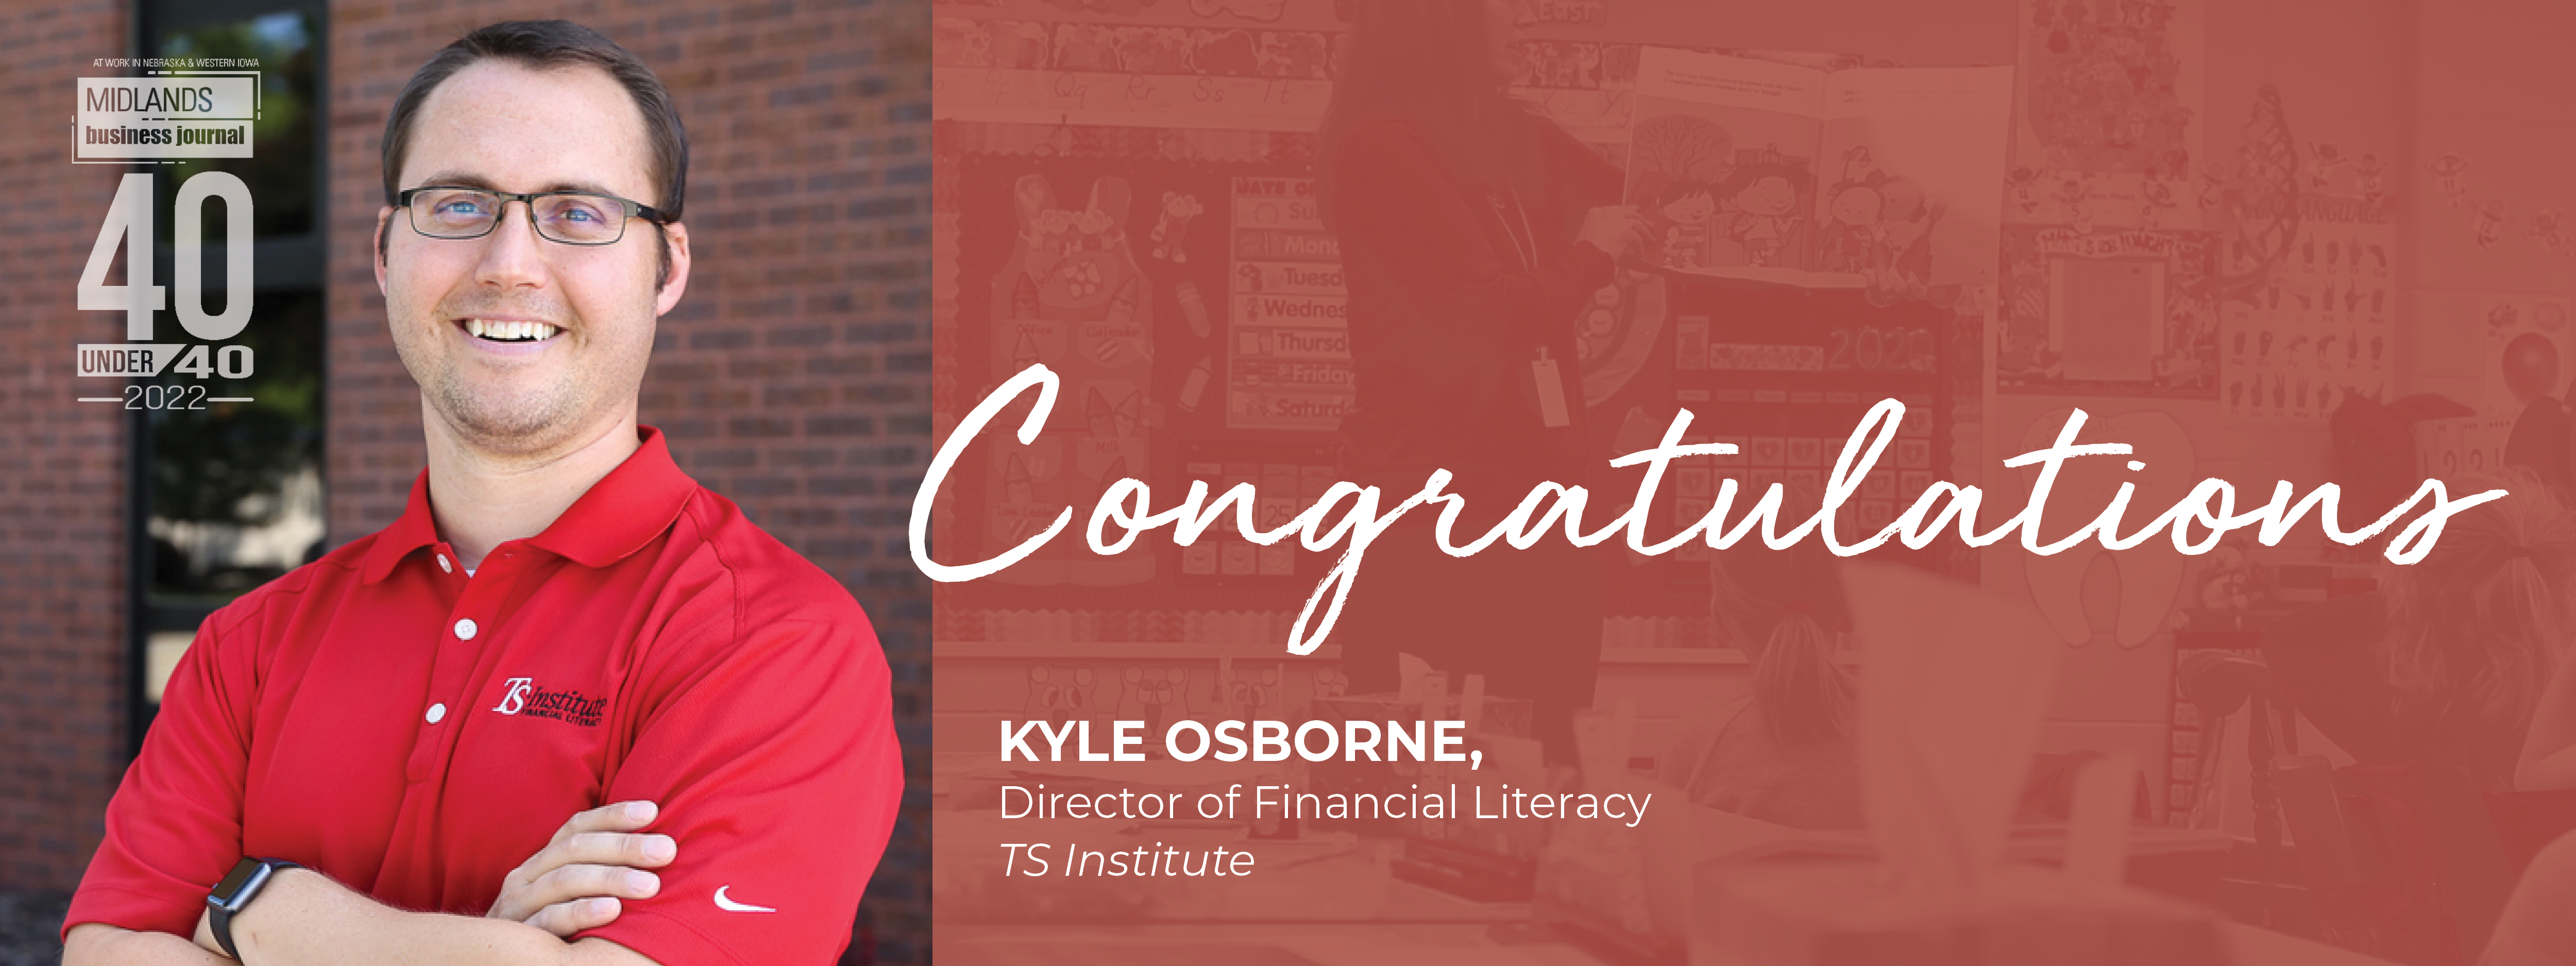 Congratulations Kyle Osborne